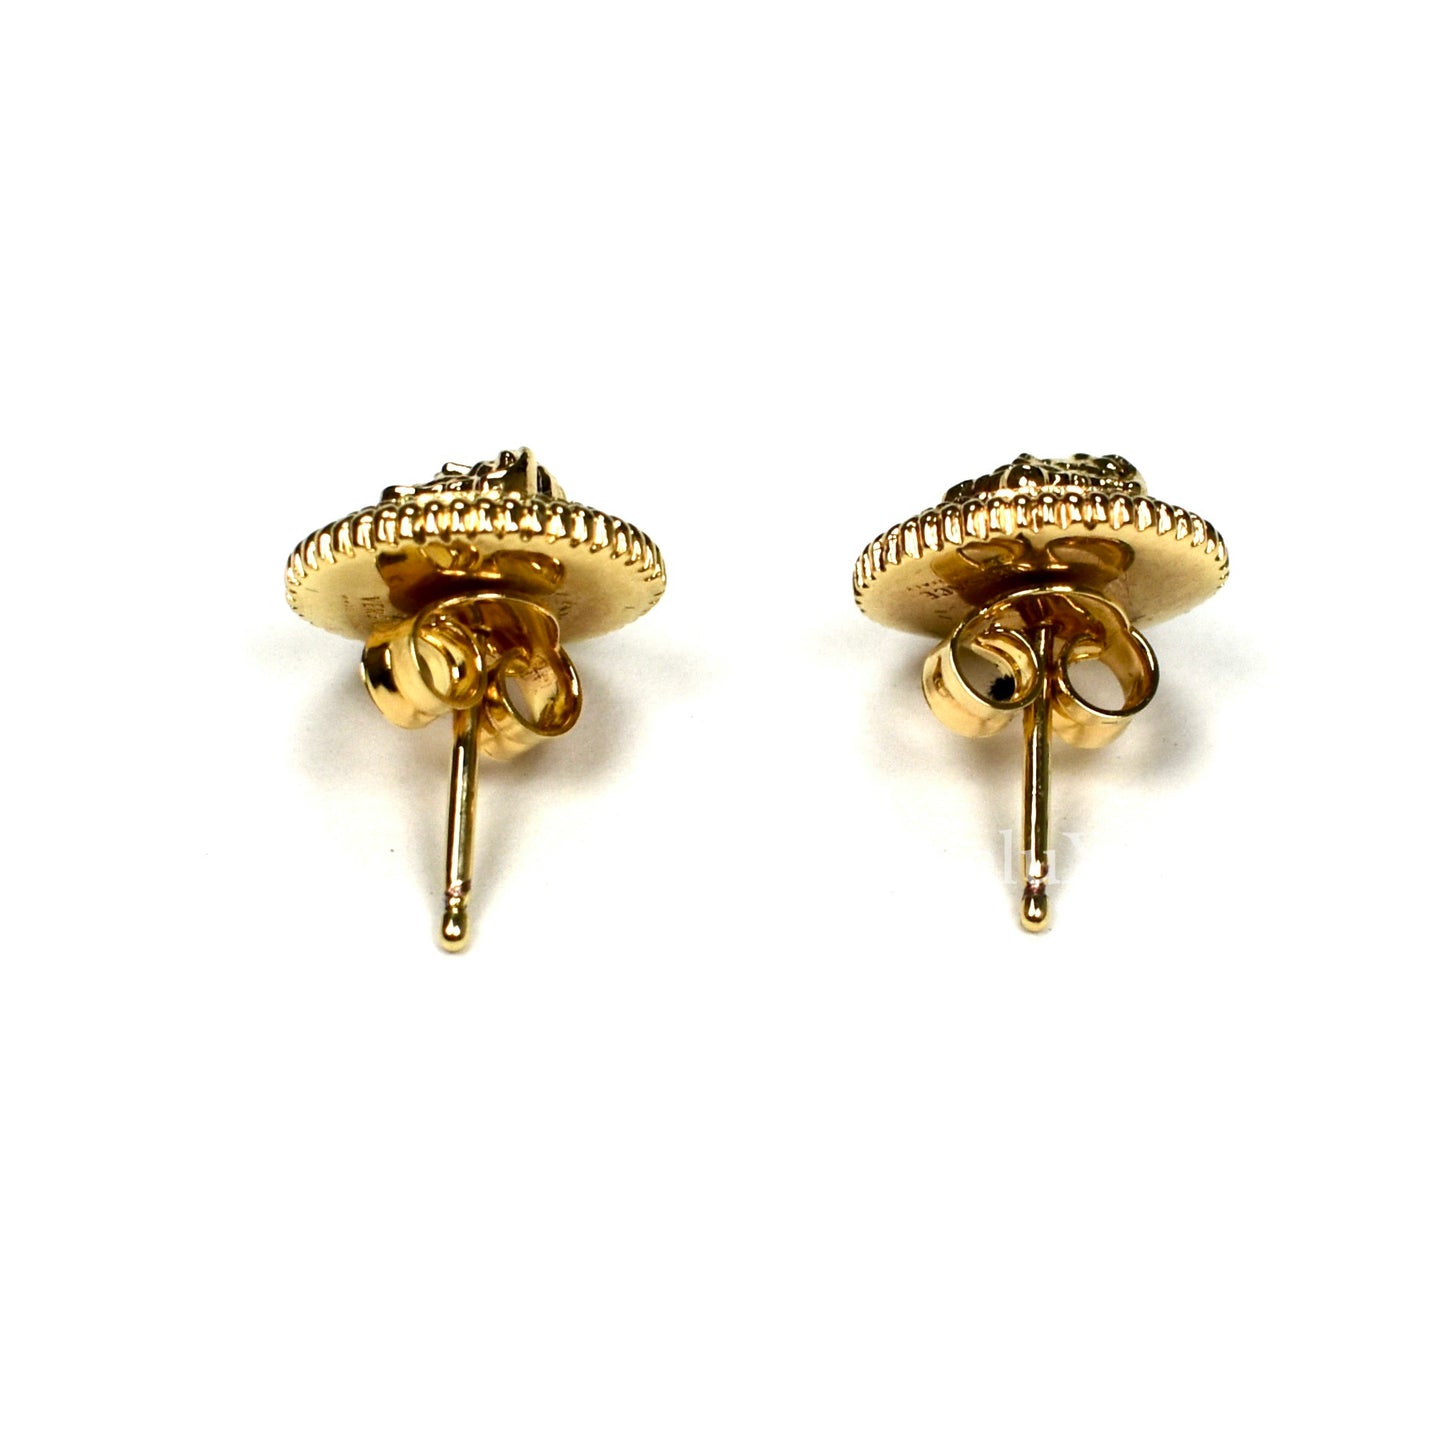 Versace - Gold Medusa Logo Stud Earrings